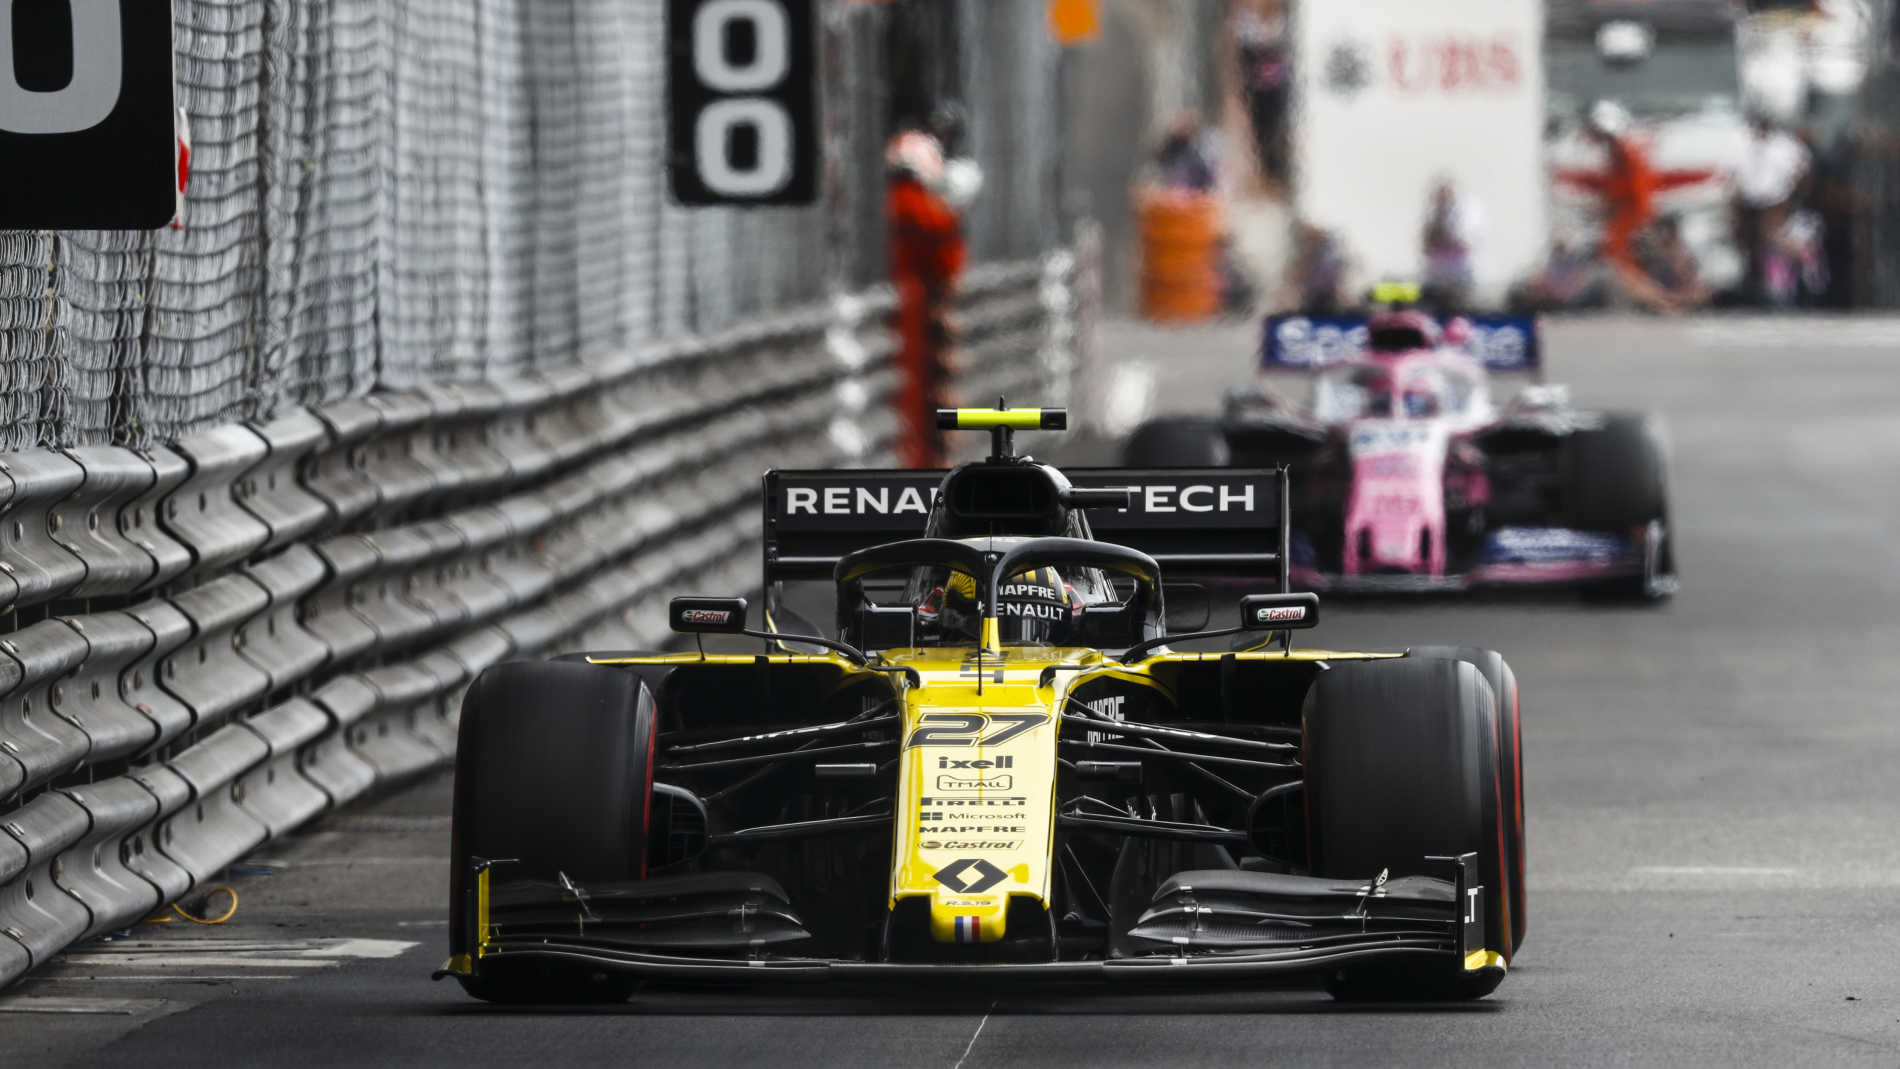 LIVE COVERAGE - Second Practice in Monaco | Formula 1®